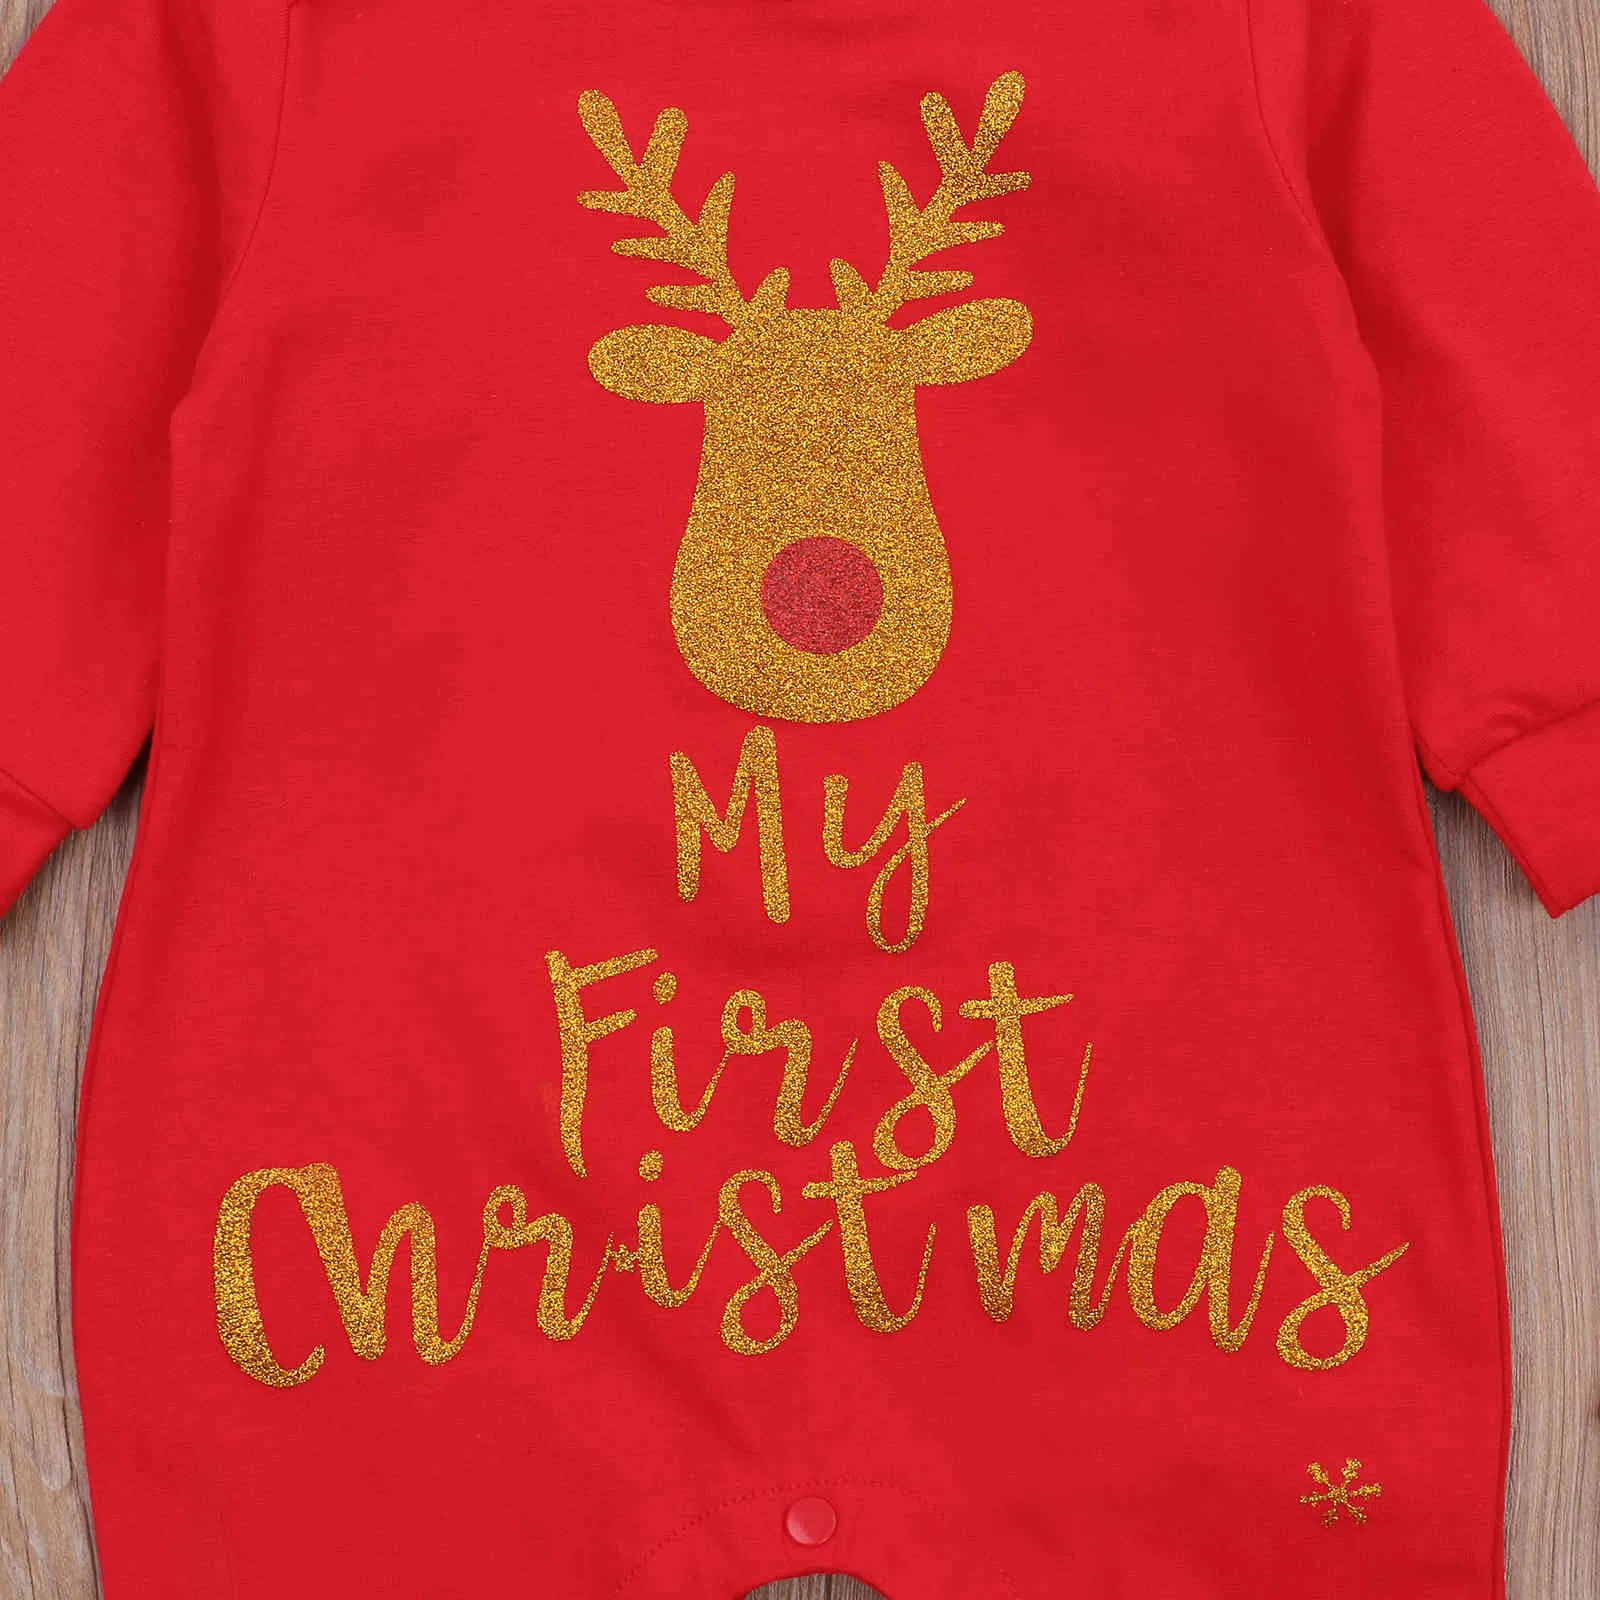 0-18M My 1st Christmas Infant Born Baby Boy Girl Kombinezon Z Długim Rękawem List Deer Red Romper Xmas Stroje 210515